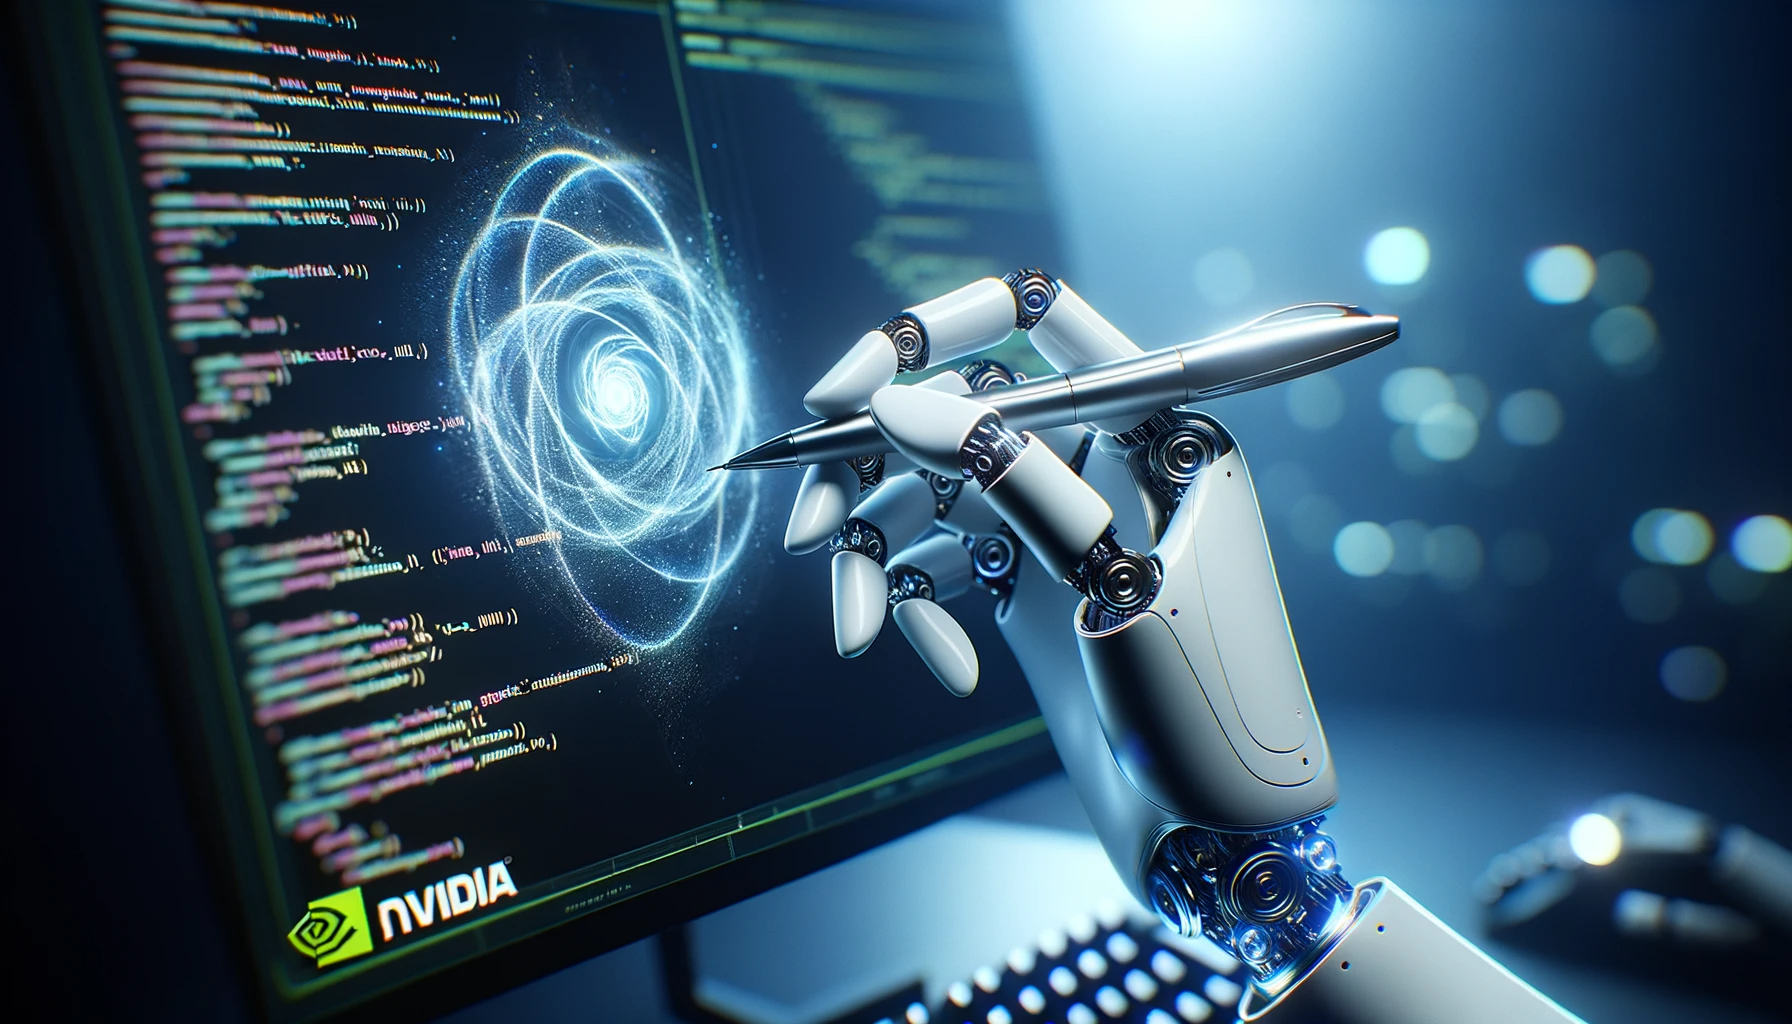 【特集】NvidiaのEureka AIエージェントがロボットの器用さを教える